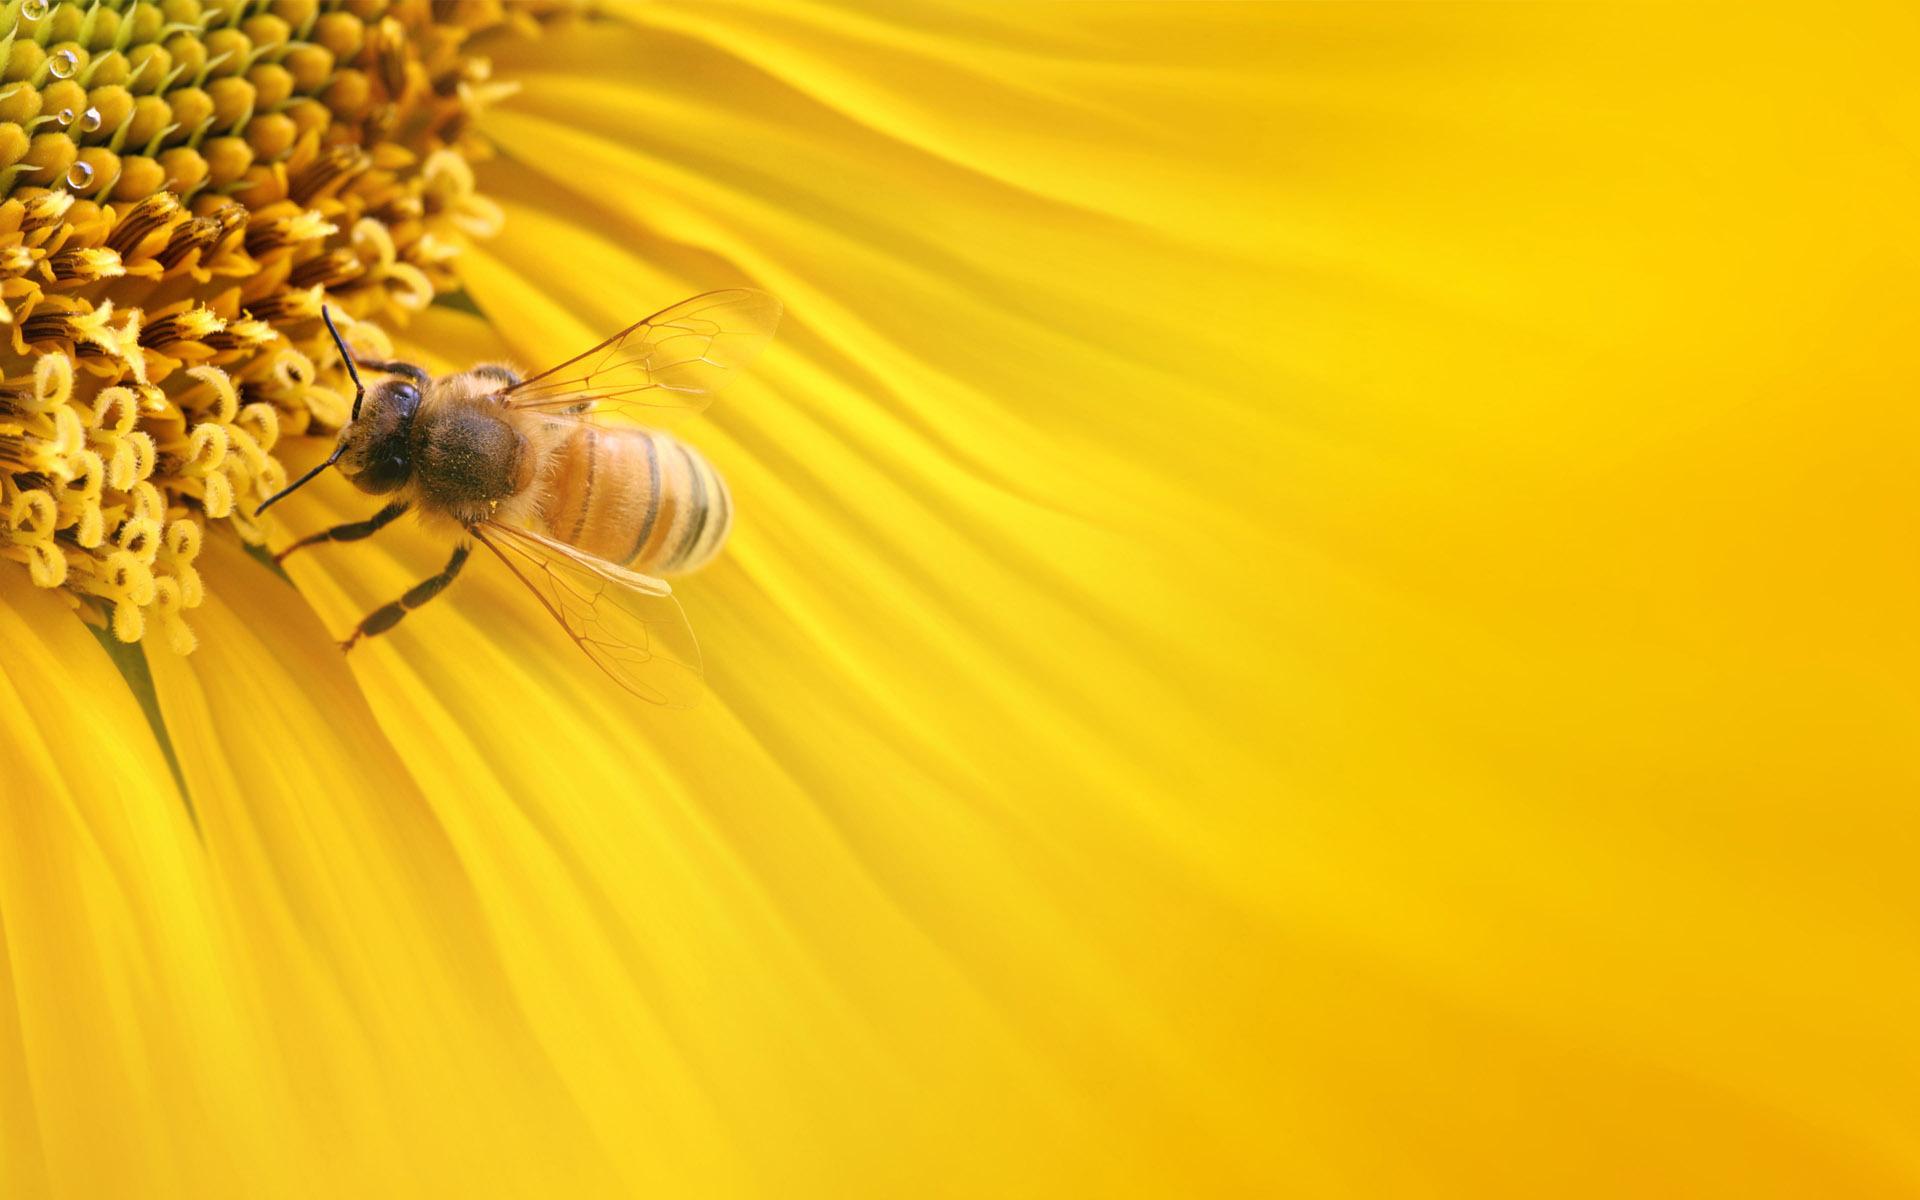 Honeybee Wallpaper. Honeybee